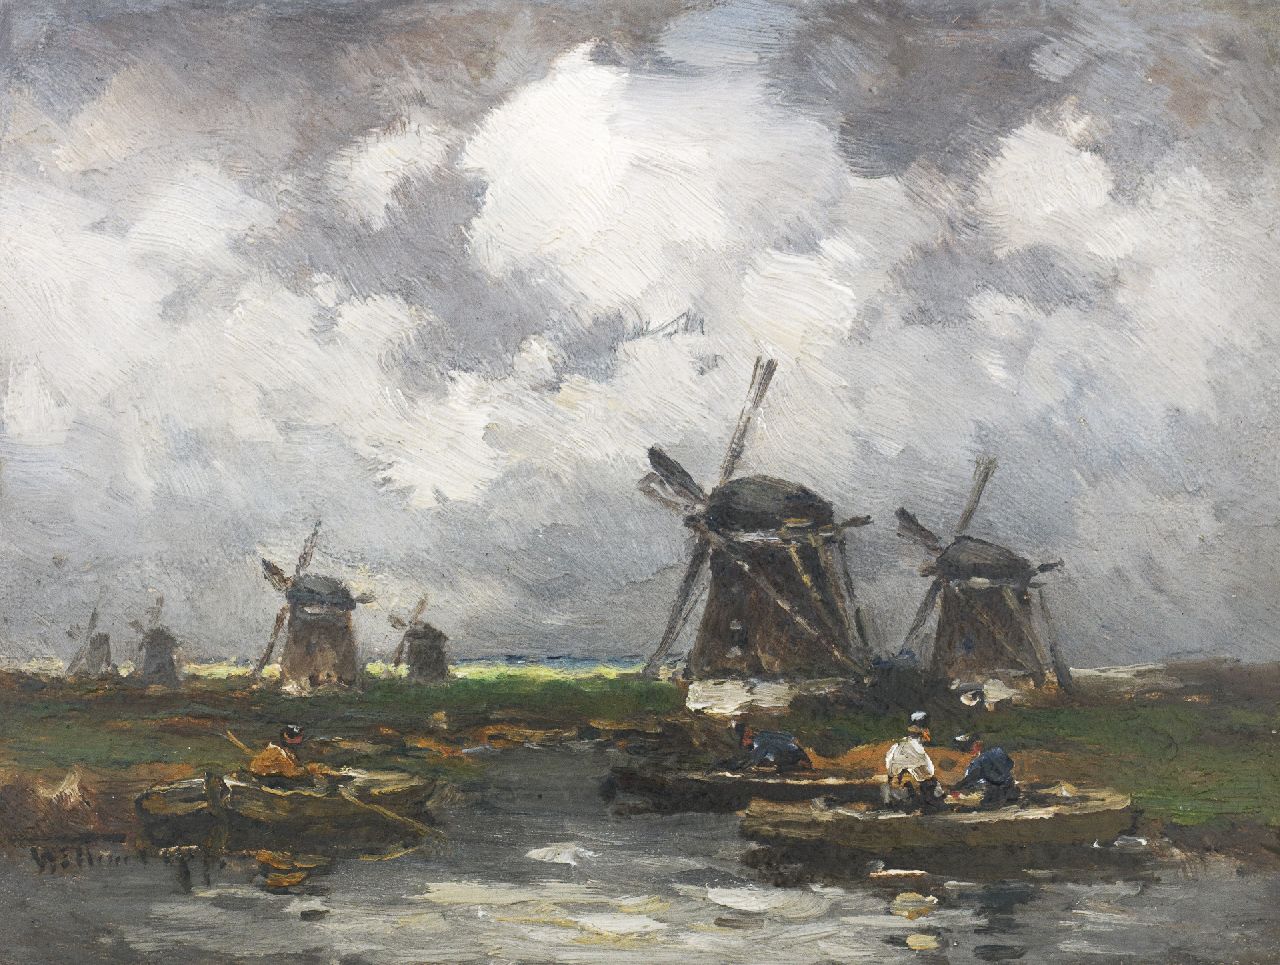 Rip W.C.  | 'Willem' Cornelis Rip, De watermolens, olieverf op paneel 15,9 x 21,3 cm, gesigneerd linksonder